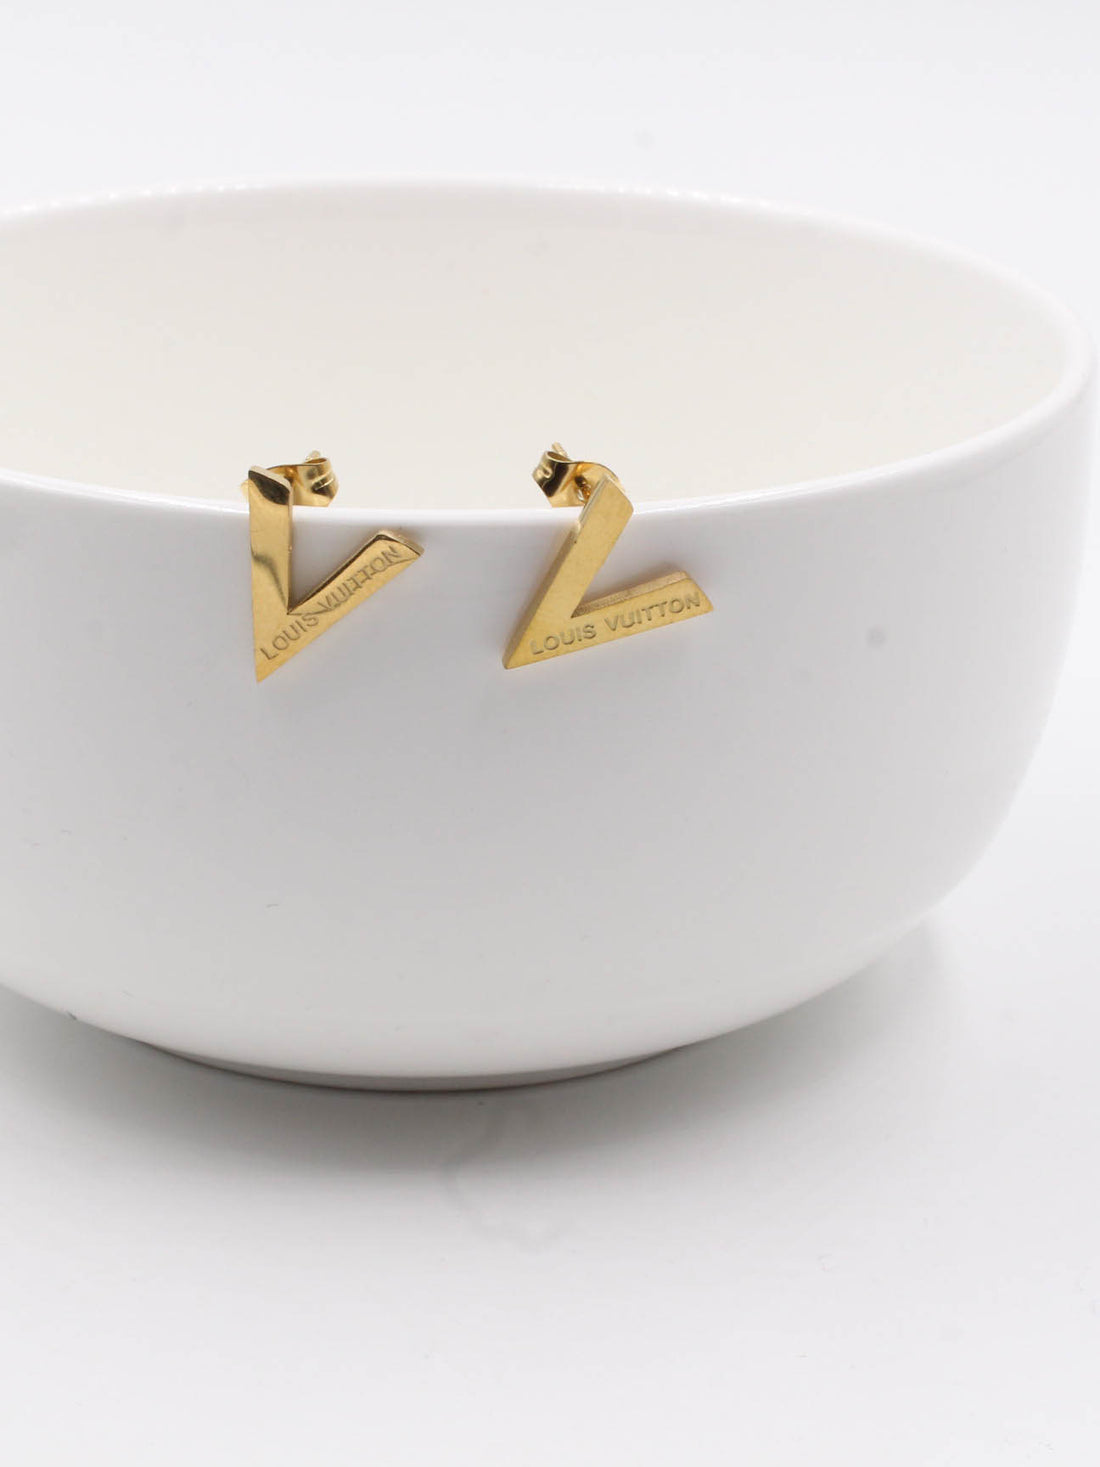 earring brand Louis Vuitton - حلق ماركة لويس فيتون حلق Jewel  